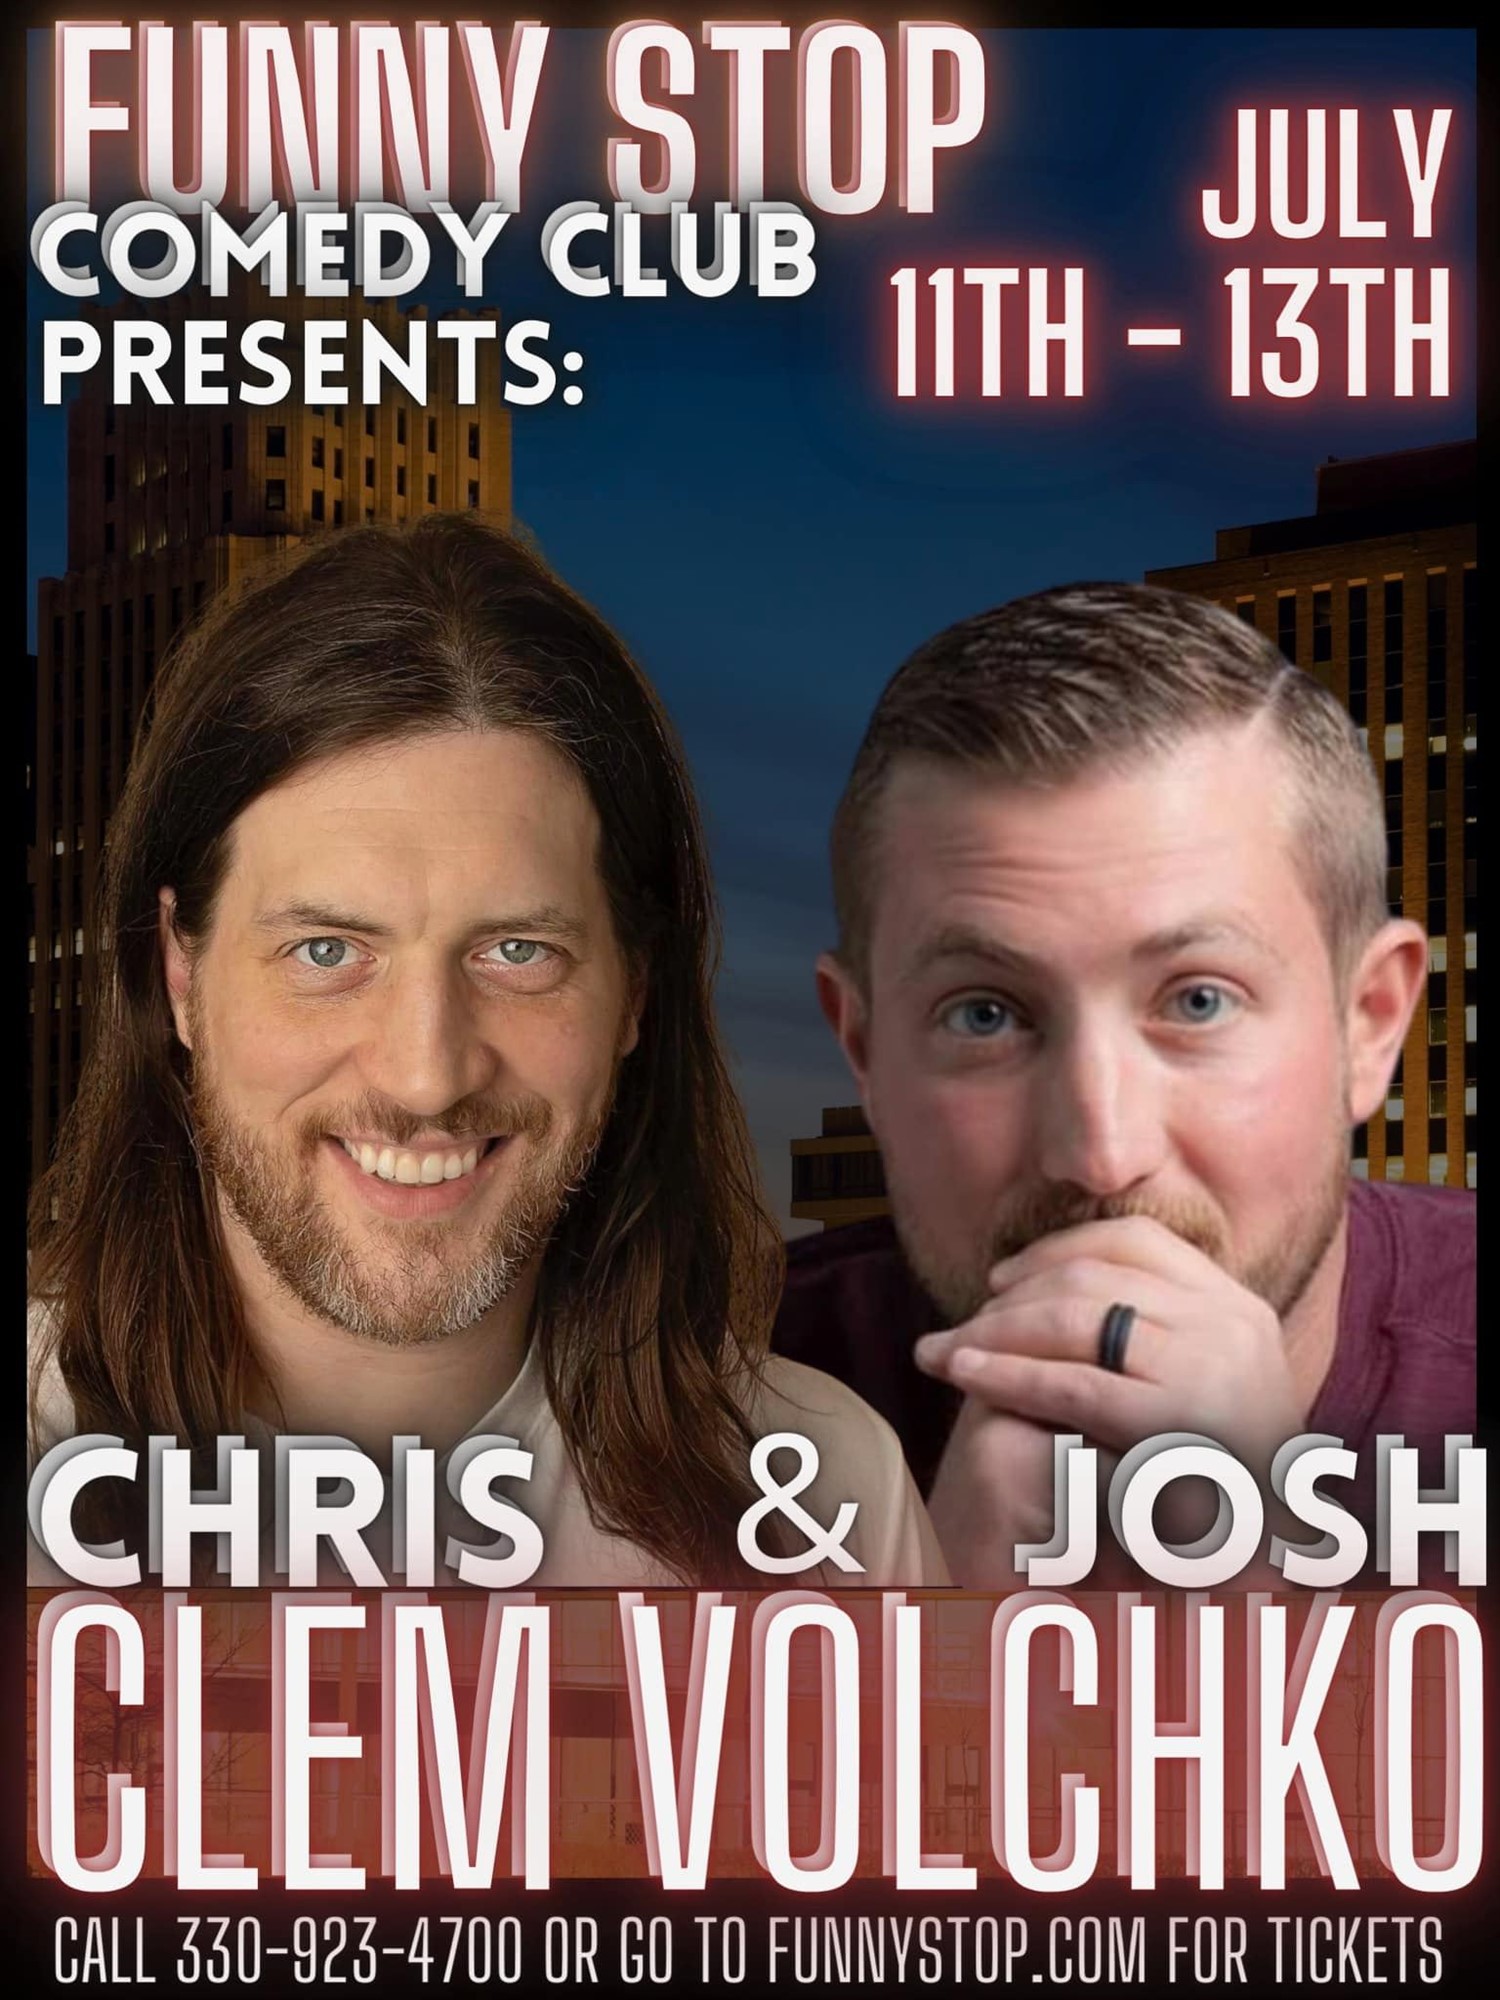 Chris Clem & Josh Volchko - Sat. 7:30PM Show Funny Stop Comedy Club on jul. 13, 19:30@Funny Stop Comedy Club - Compra entradas y obtén información enFunny Stop funnystop.online